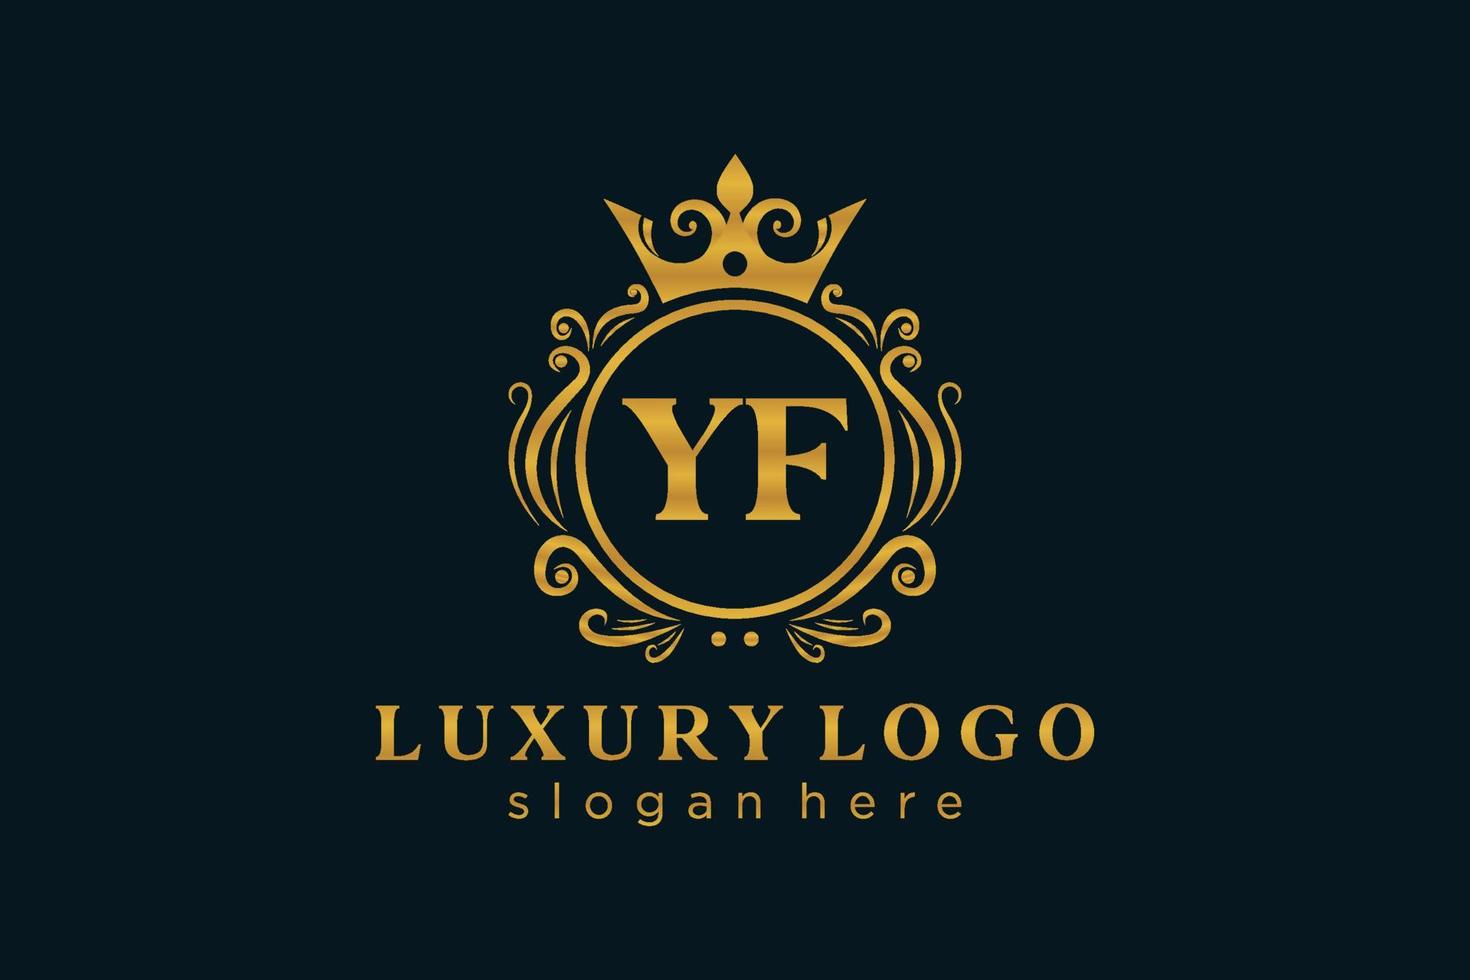 anfängliche yf-Buchstabe königliche Luxus-Logo-Vorlage in Vektorgrafiken für Restaurant, Lizenzgebühren, Boutique, Café, Hotel, heraldisch, Schmuck, Mode und andere Vektorillustrationen. vektor